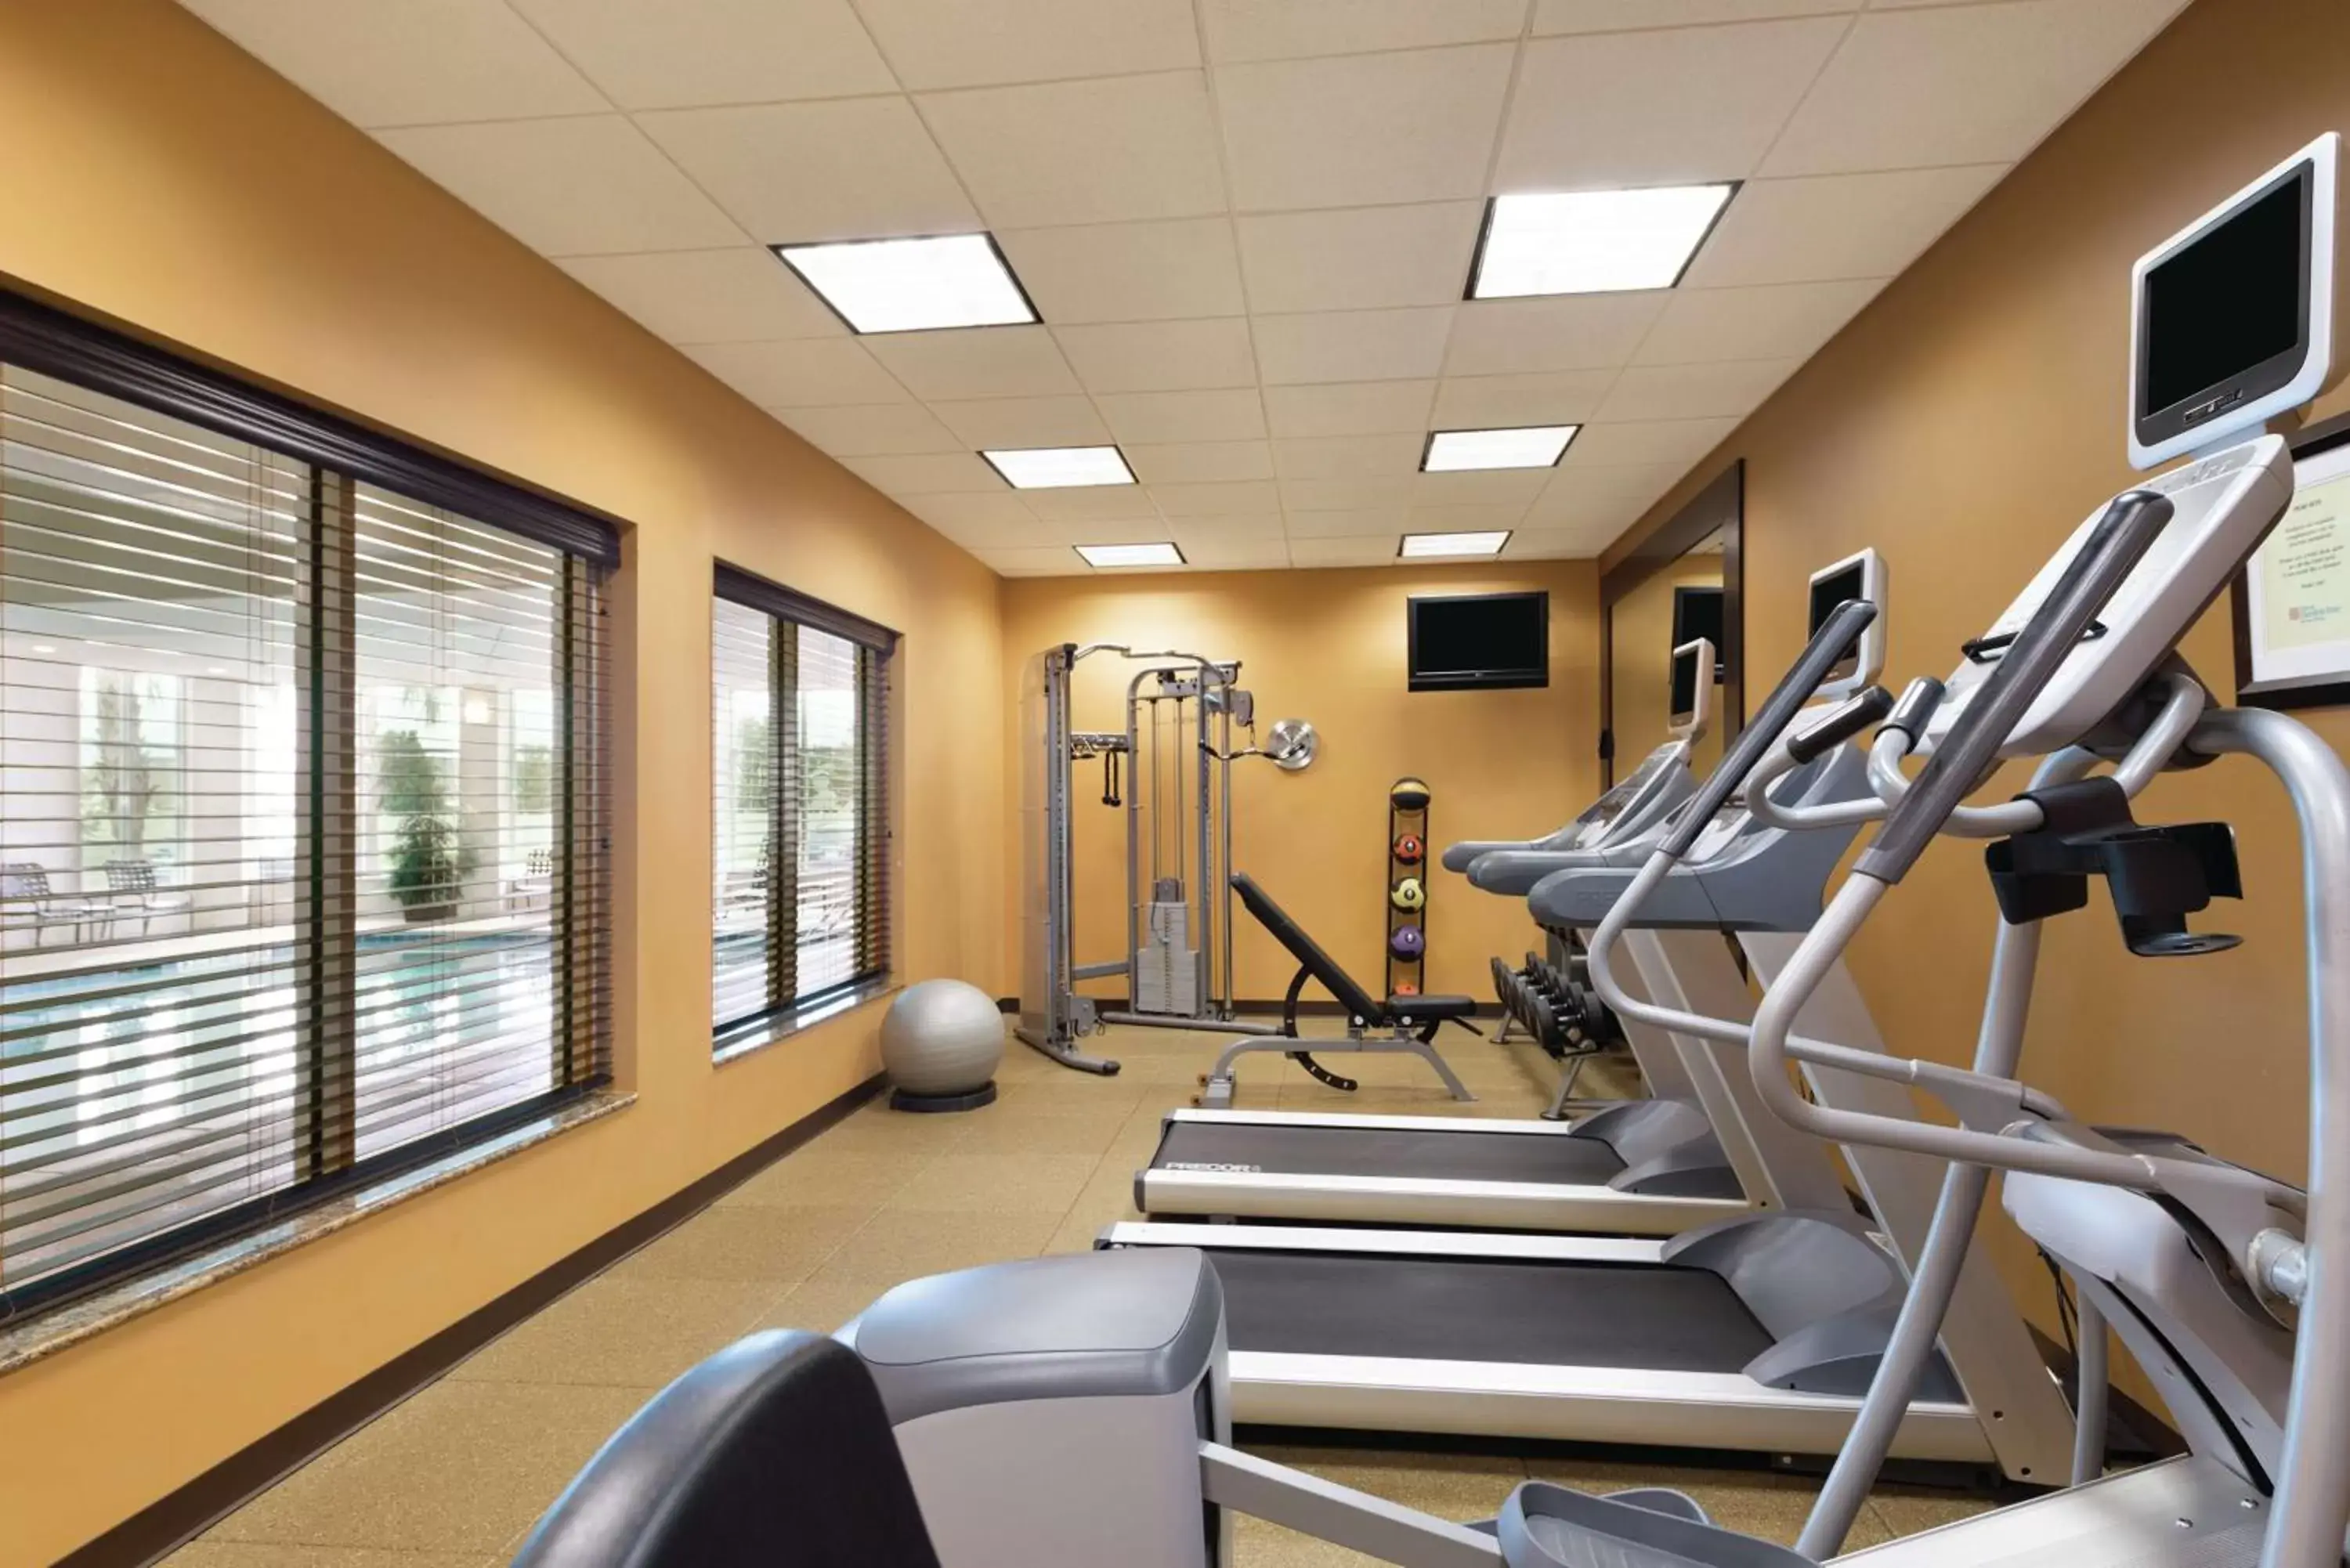 Fitness centre/facilities, Fitness Center/Facilities in Hilton Garden Inn Warner Robins